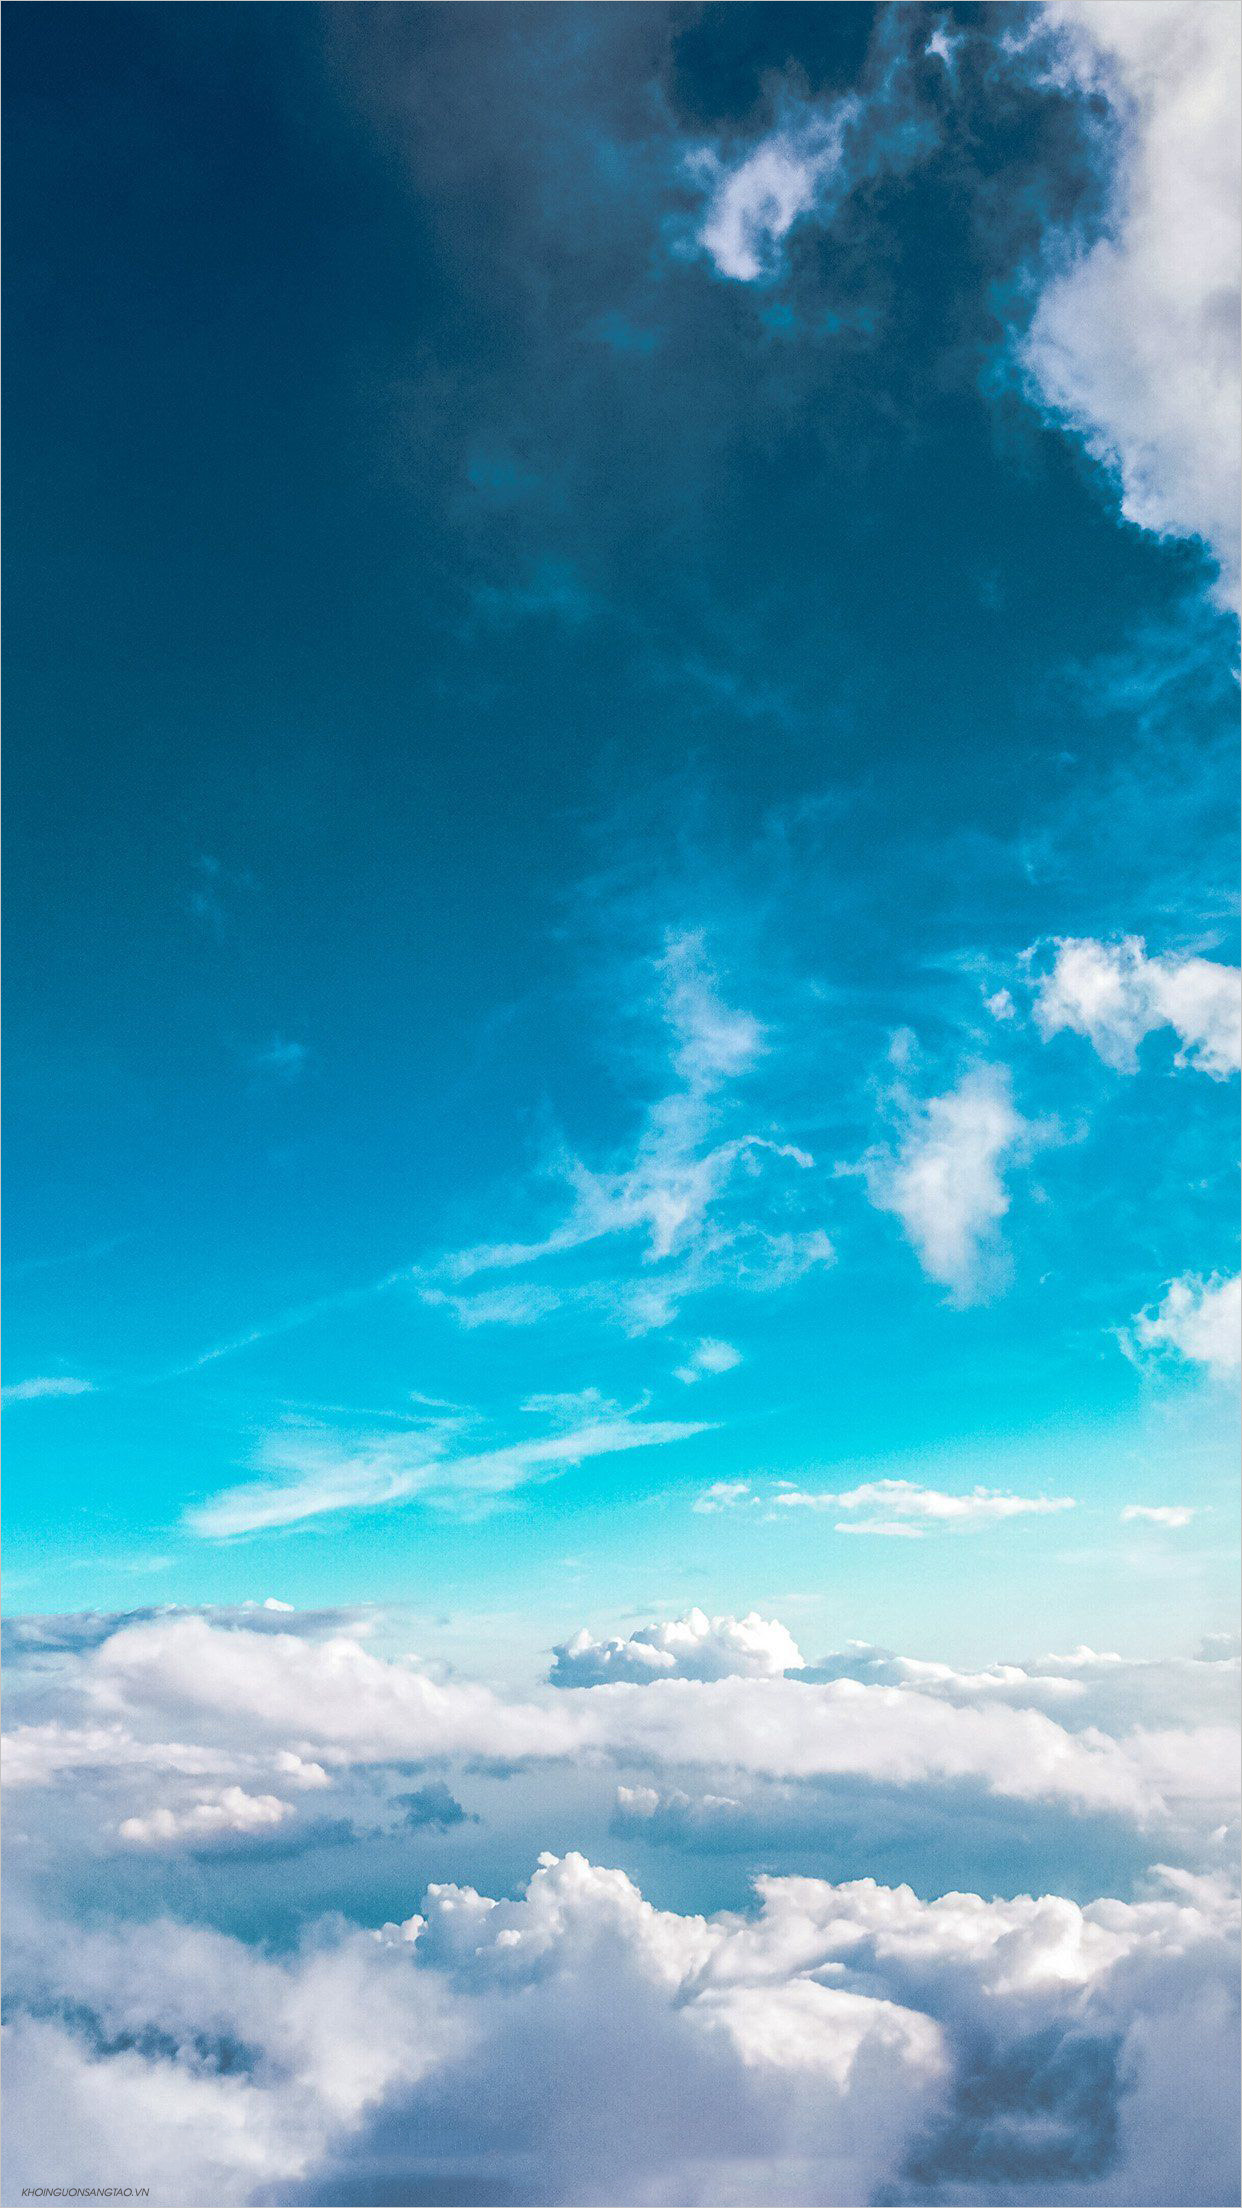 Hình nền Nền Vẽ Tay Phim Hoạt Hình Bầu Trời Xanh Nền Mây Trắng đám Mây  Con Chuồn Chuồn Background Vector để tải xuống miễn phí  Pngtree